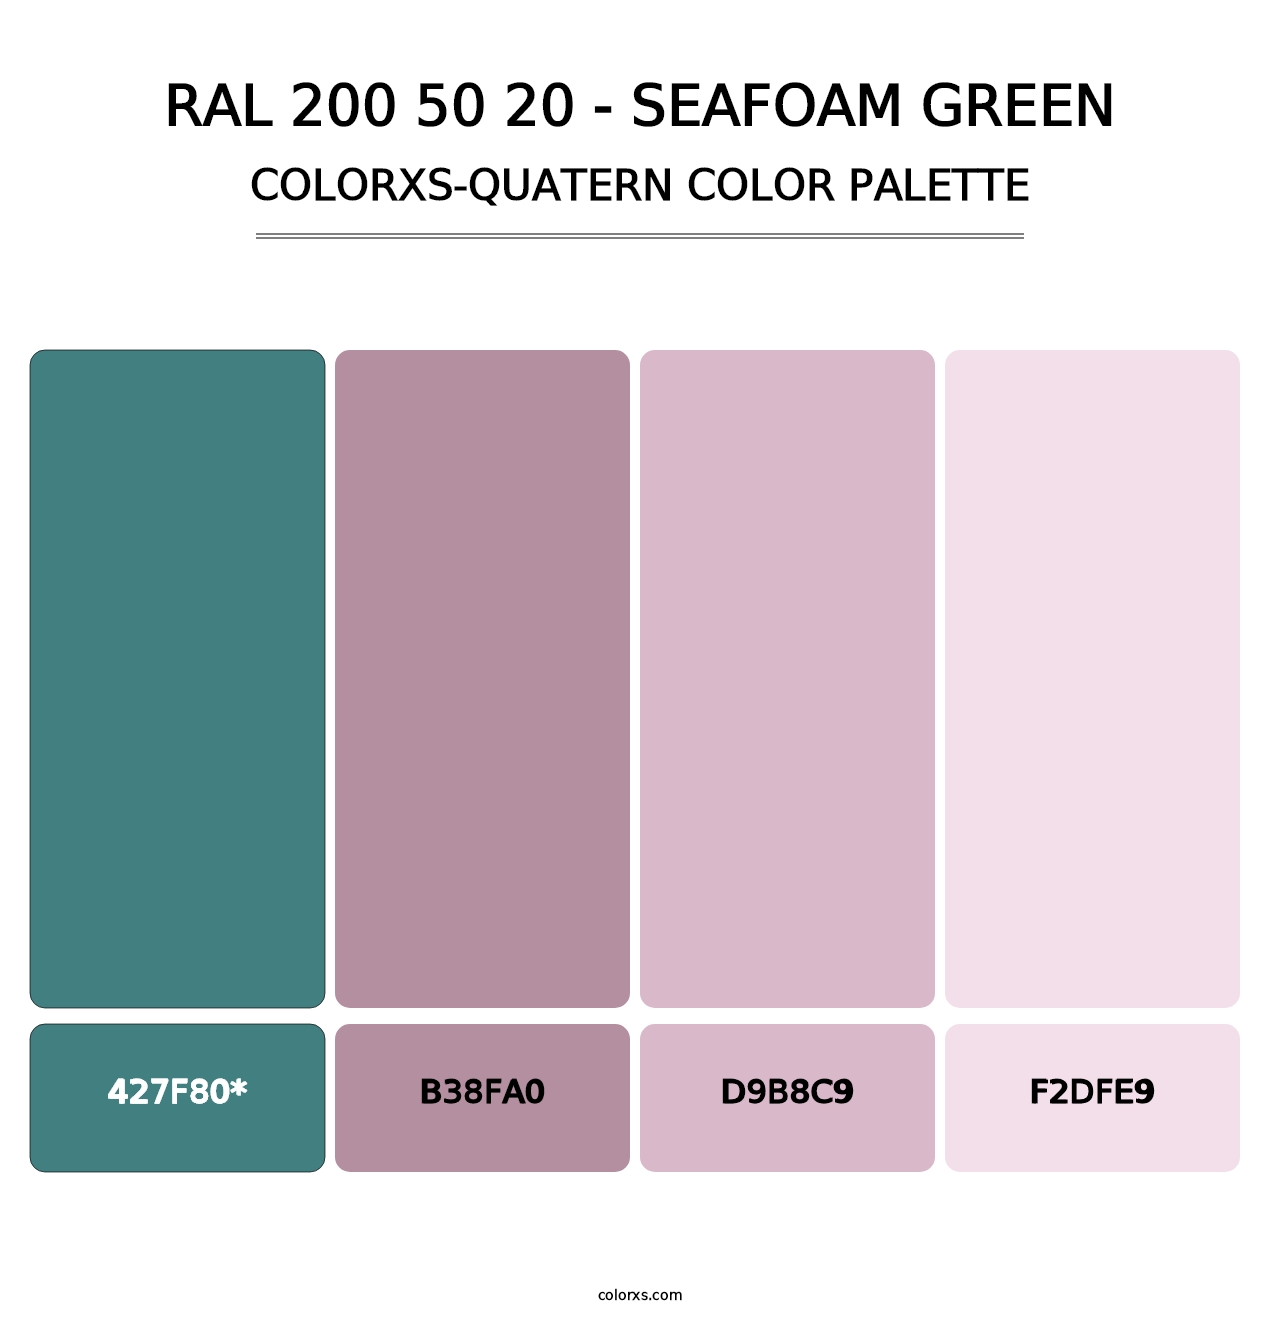 RAL 200 50 20 - Seafoam Green - Colorxs Quatern Palette